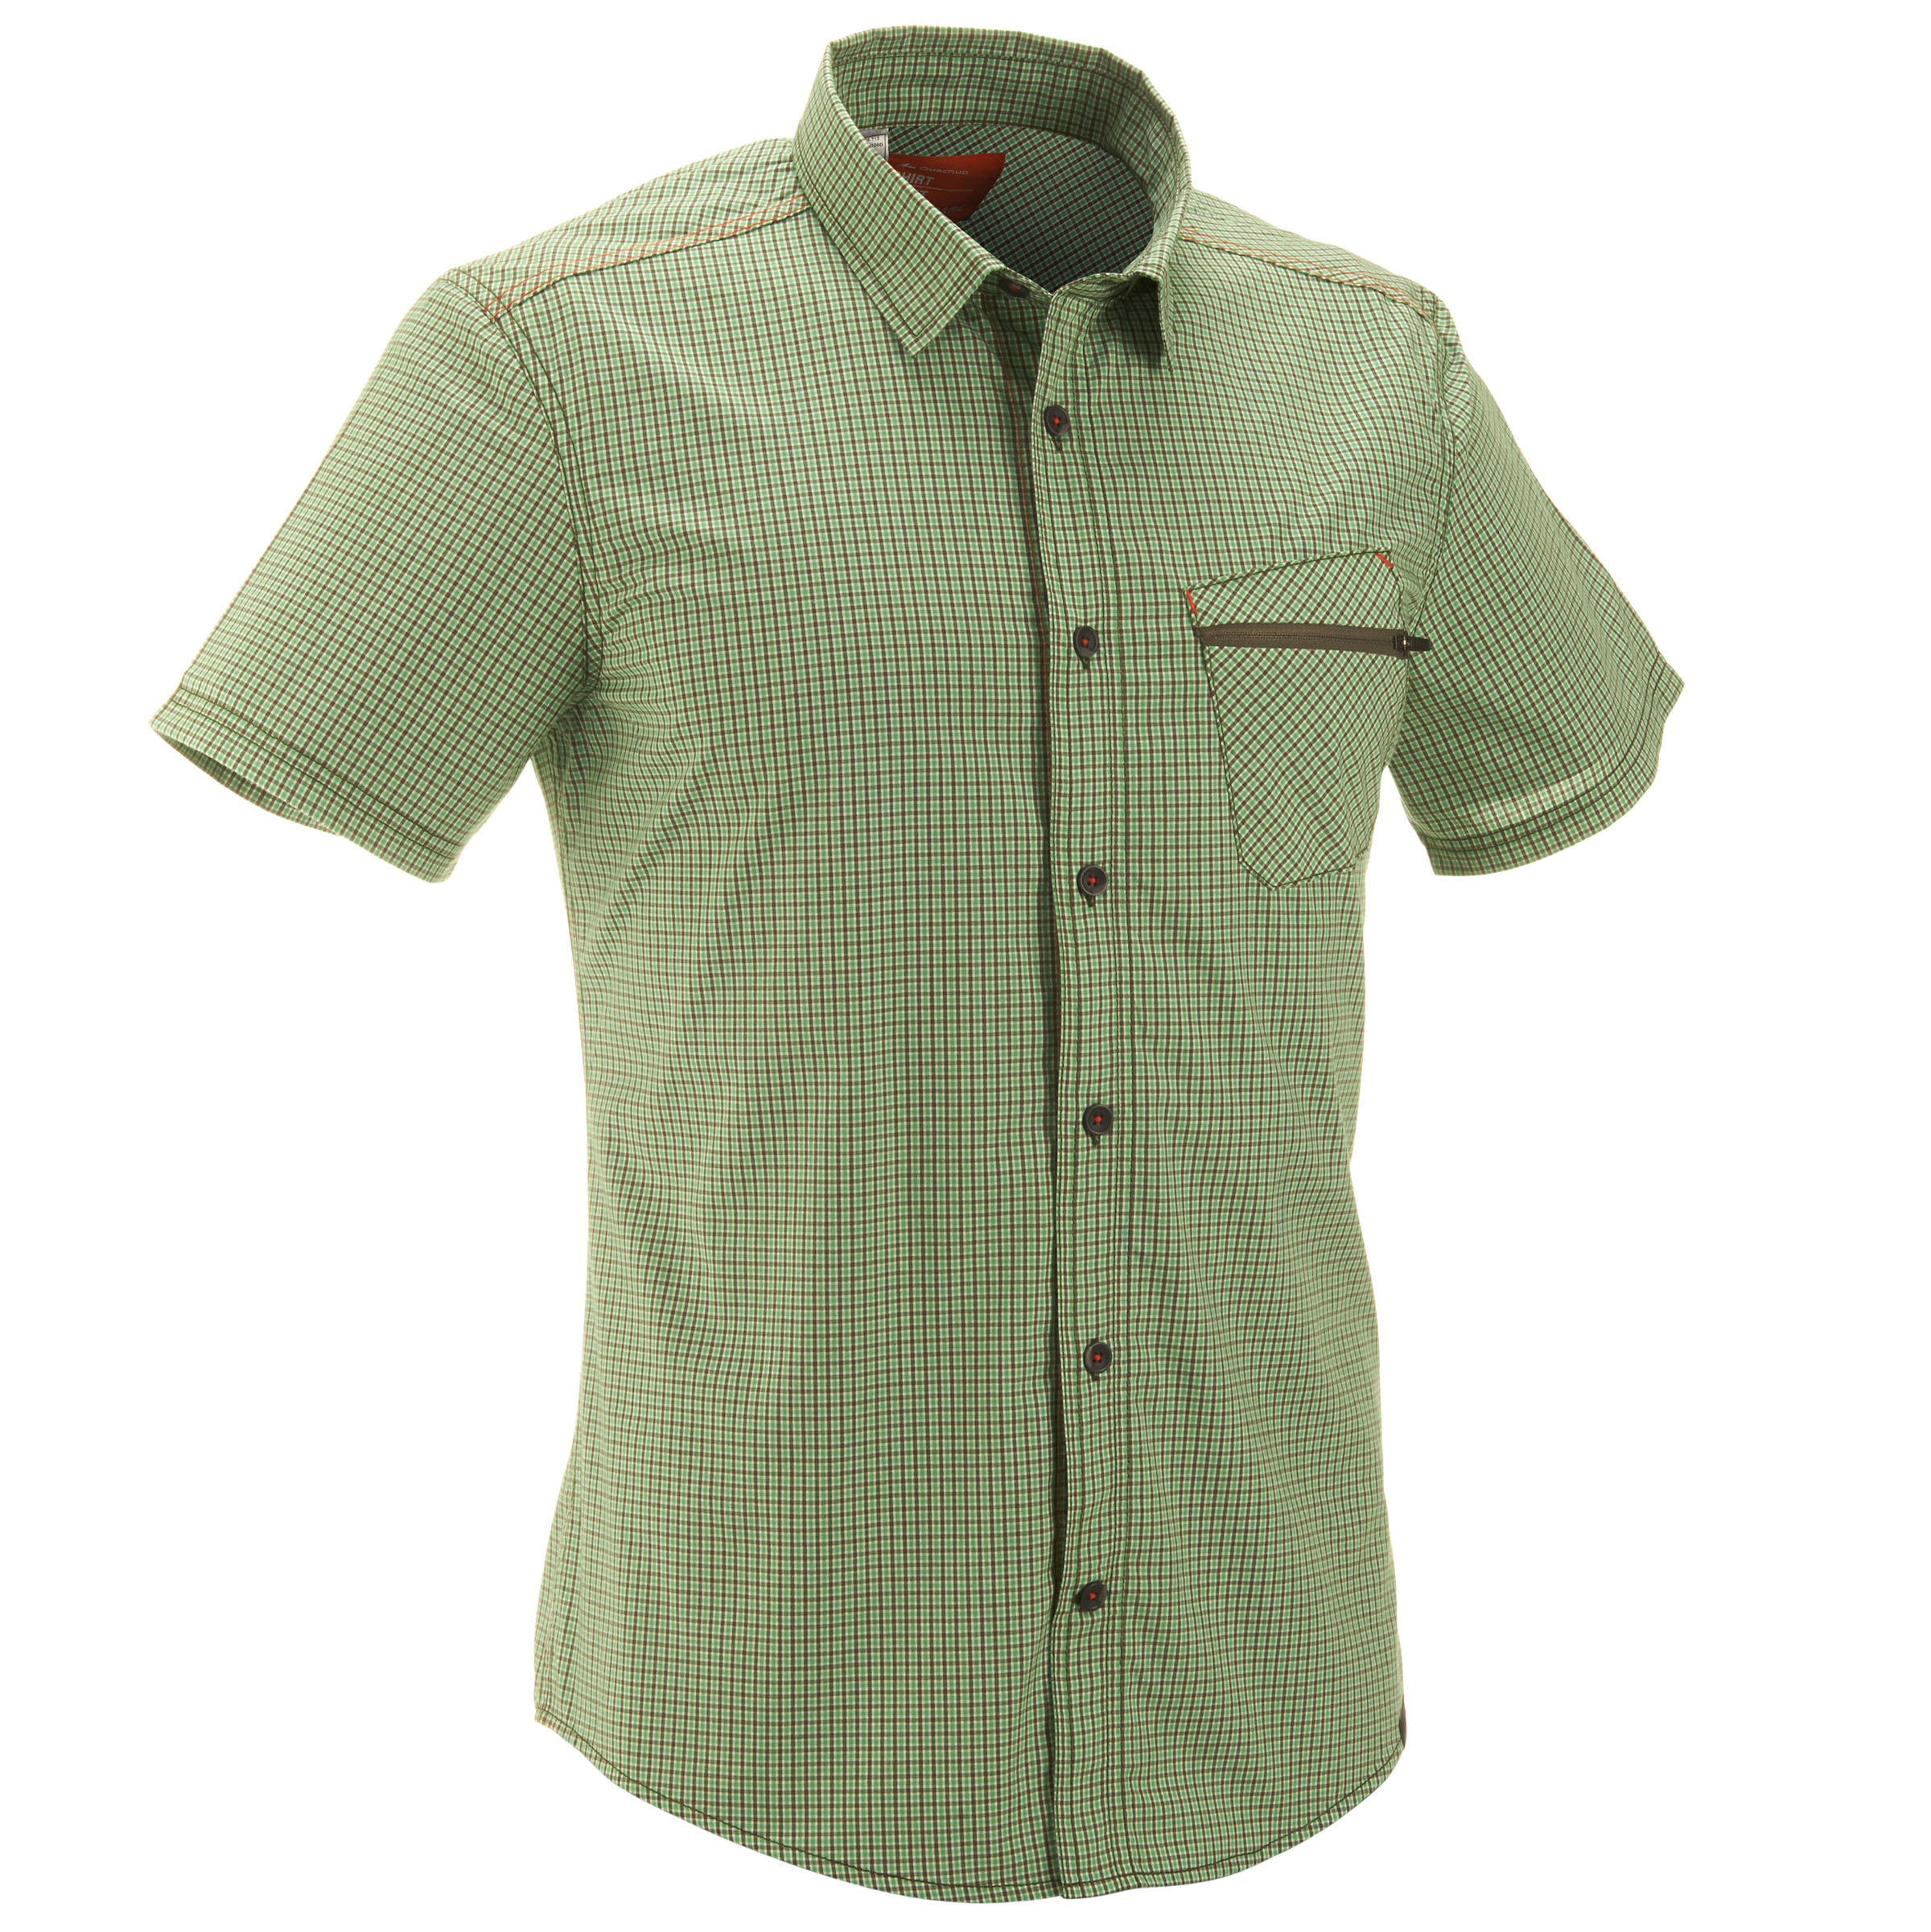 QUECHUA Arpenaz 100 Short-Sleeved Hiking T-Shirt - Green